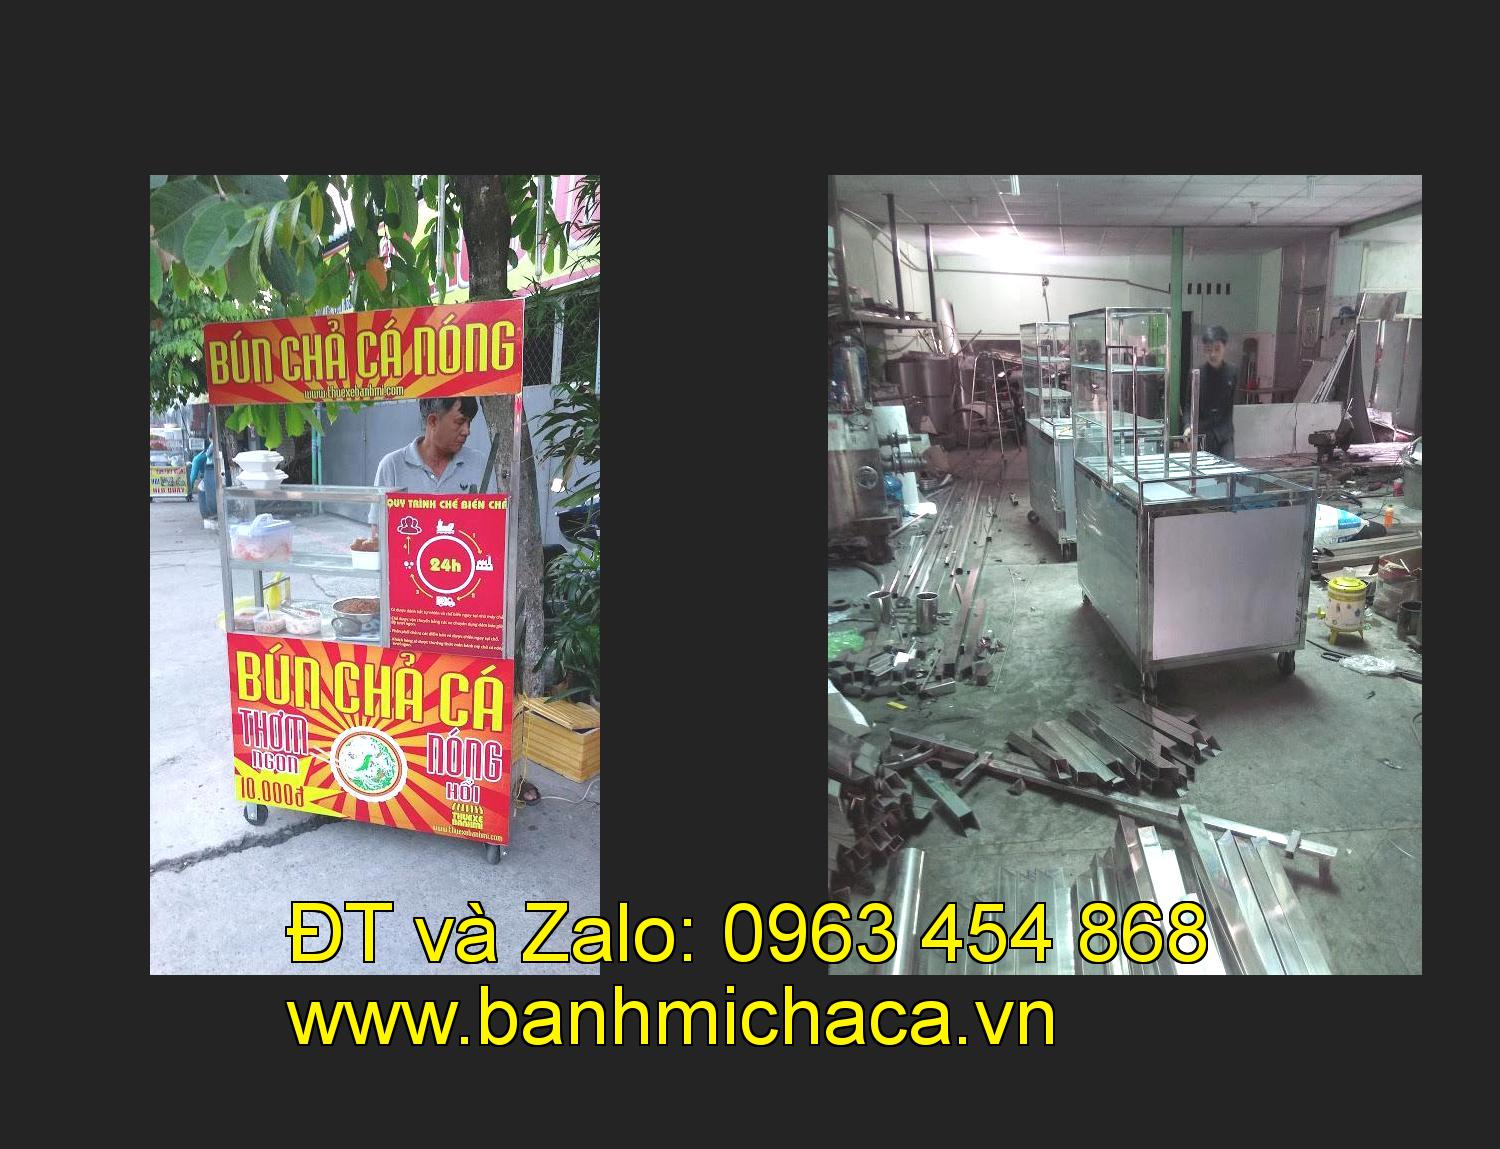 Bán xe bánh mì chả cá tại tỉnh Thái Bình